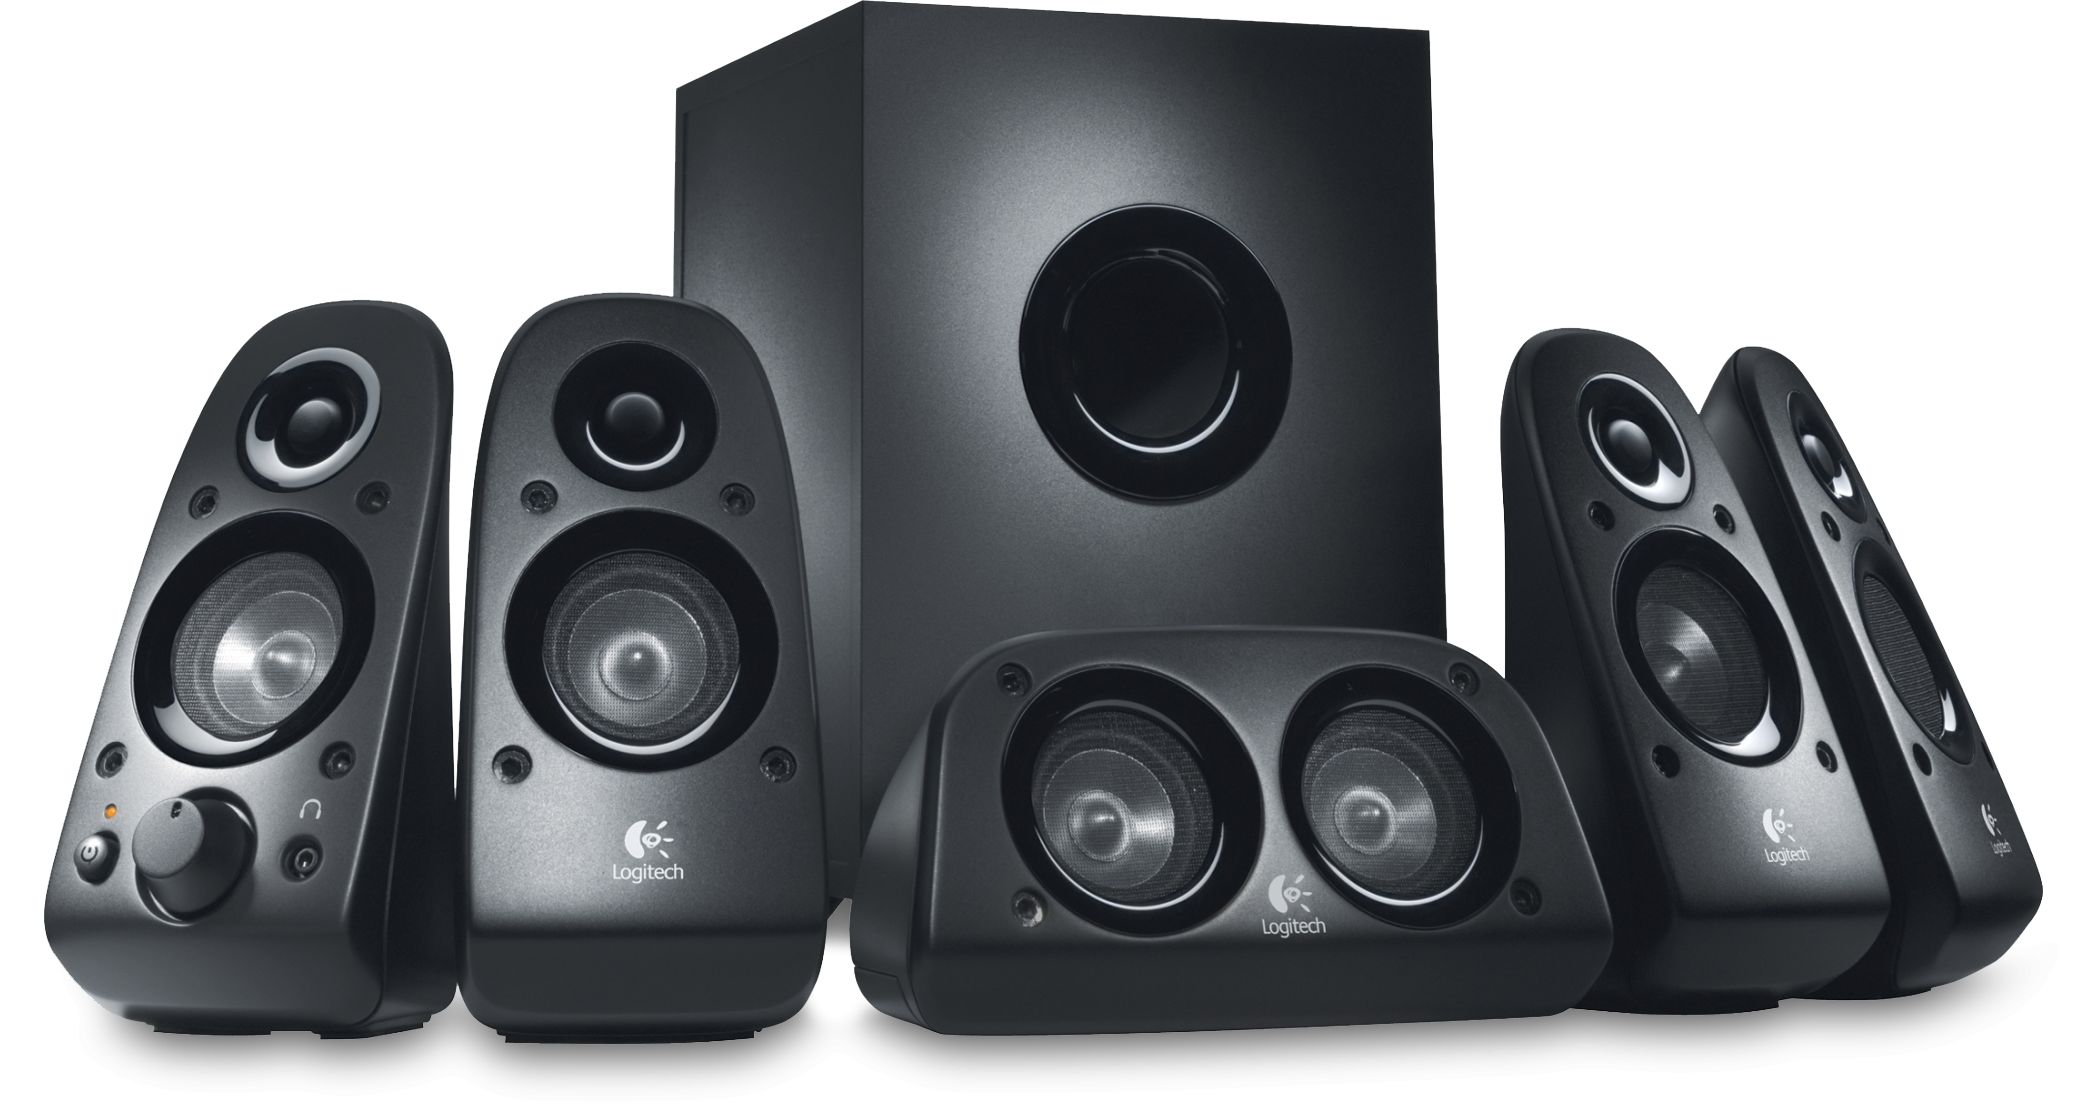 Z506 5.1 Surround Sound Speakers